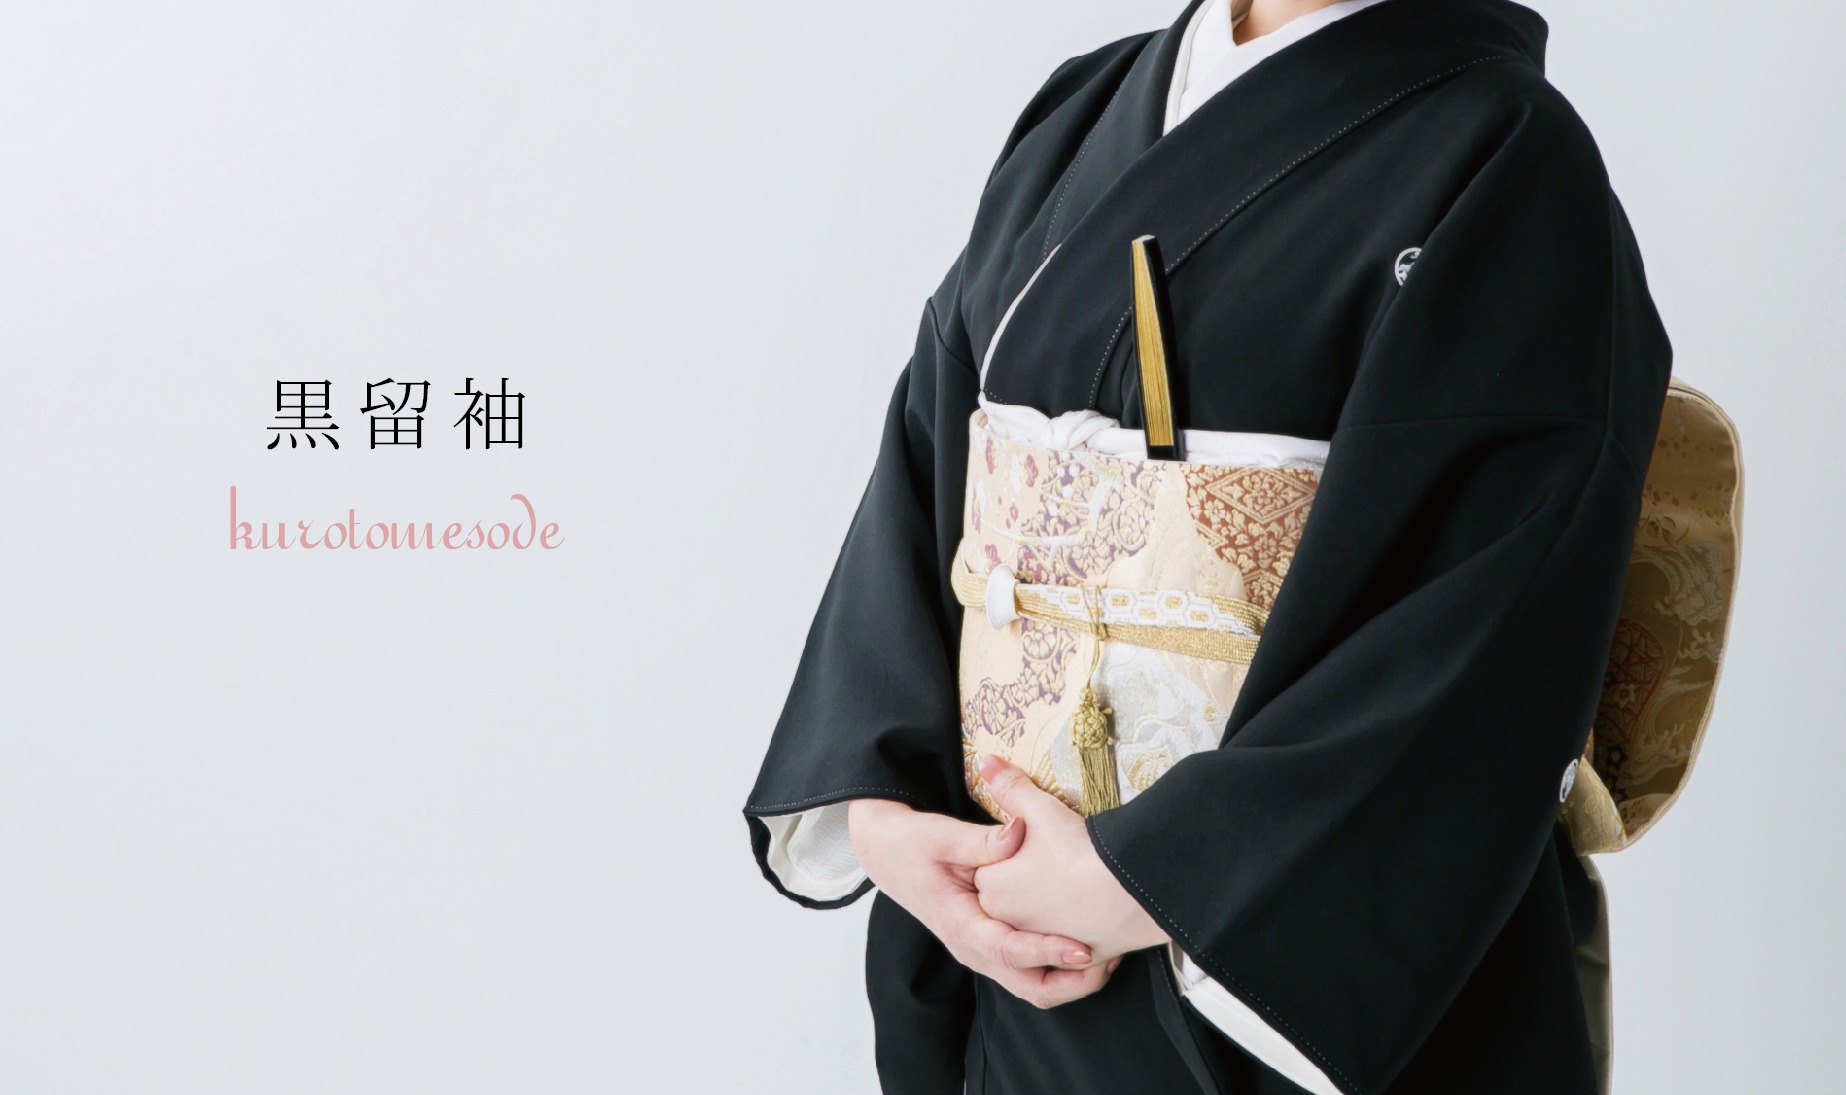 長崎の結婚式
親族衣裳レンタル
和装
神社挙式
挙式
人前式
留袖レンタル